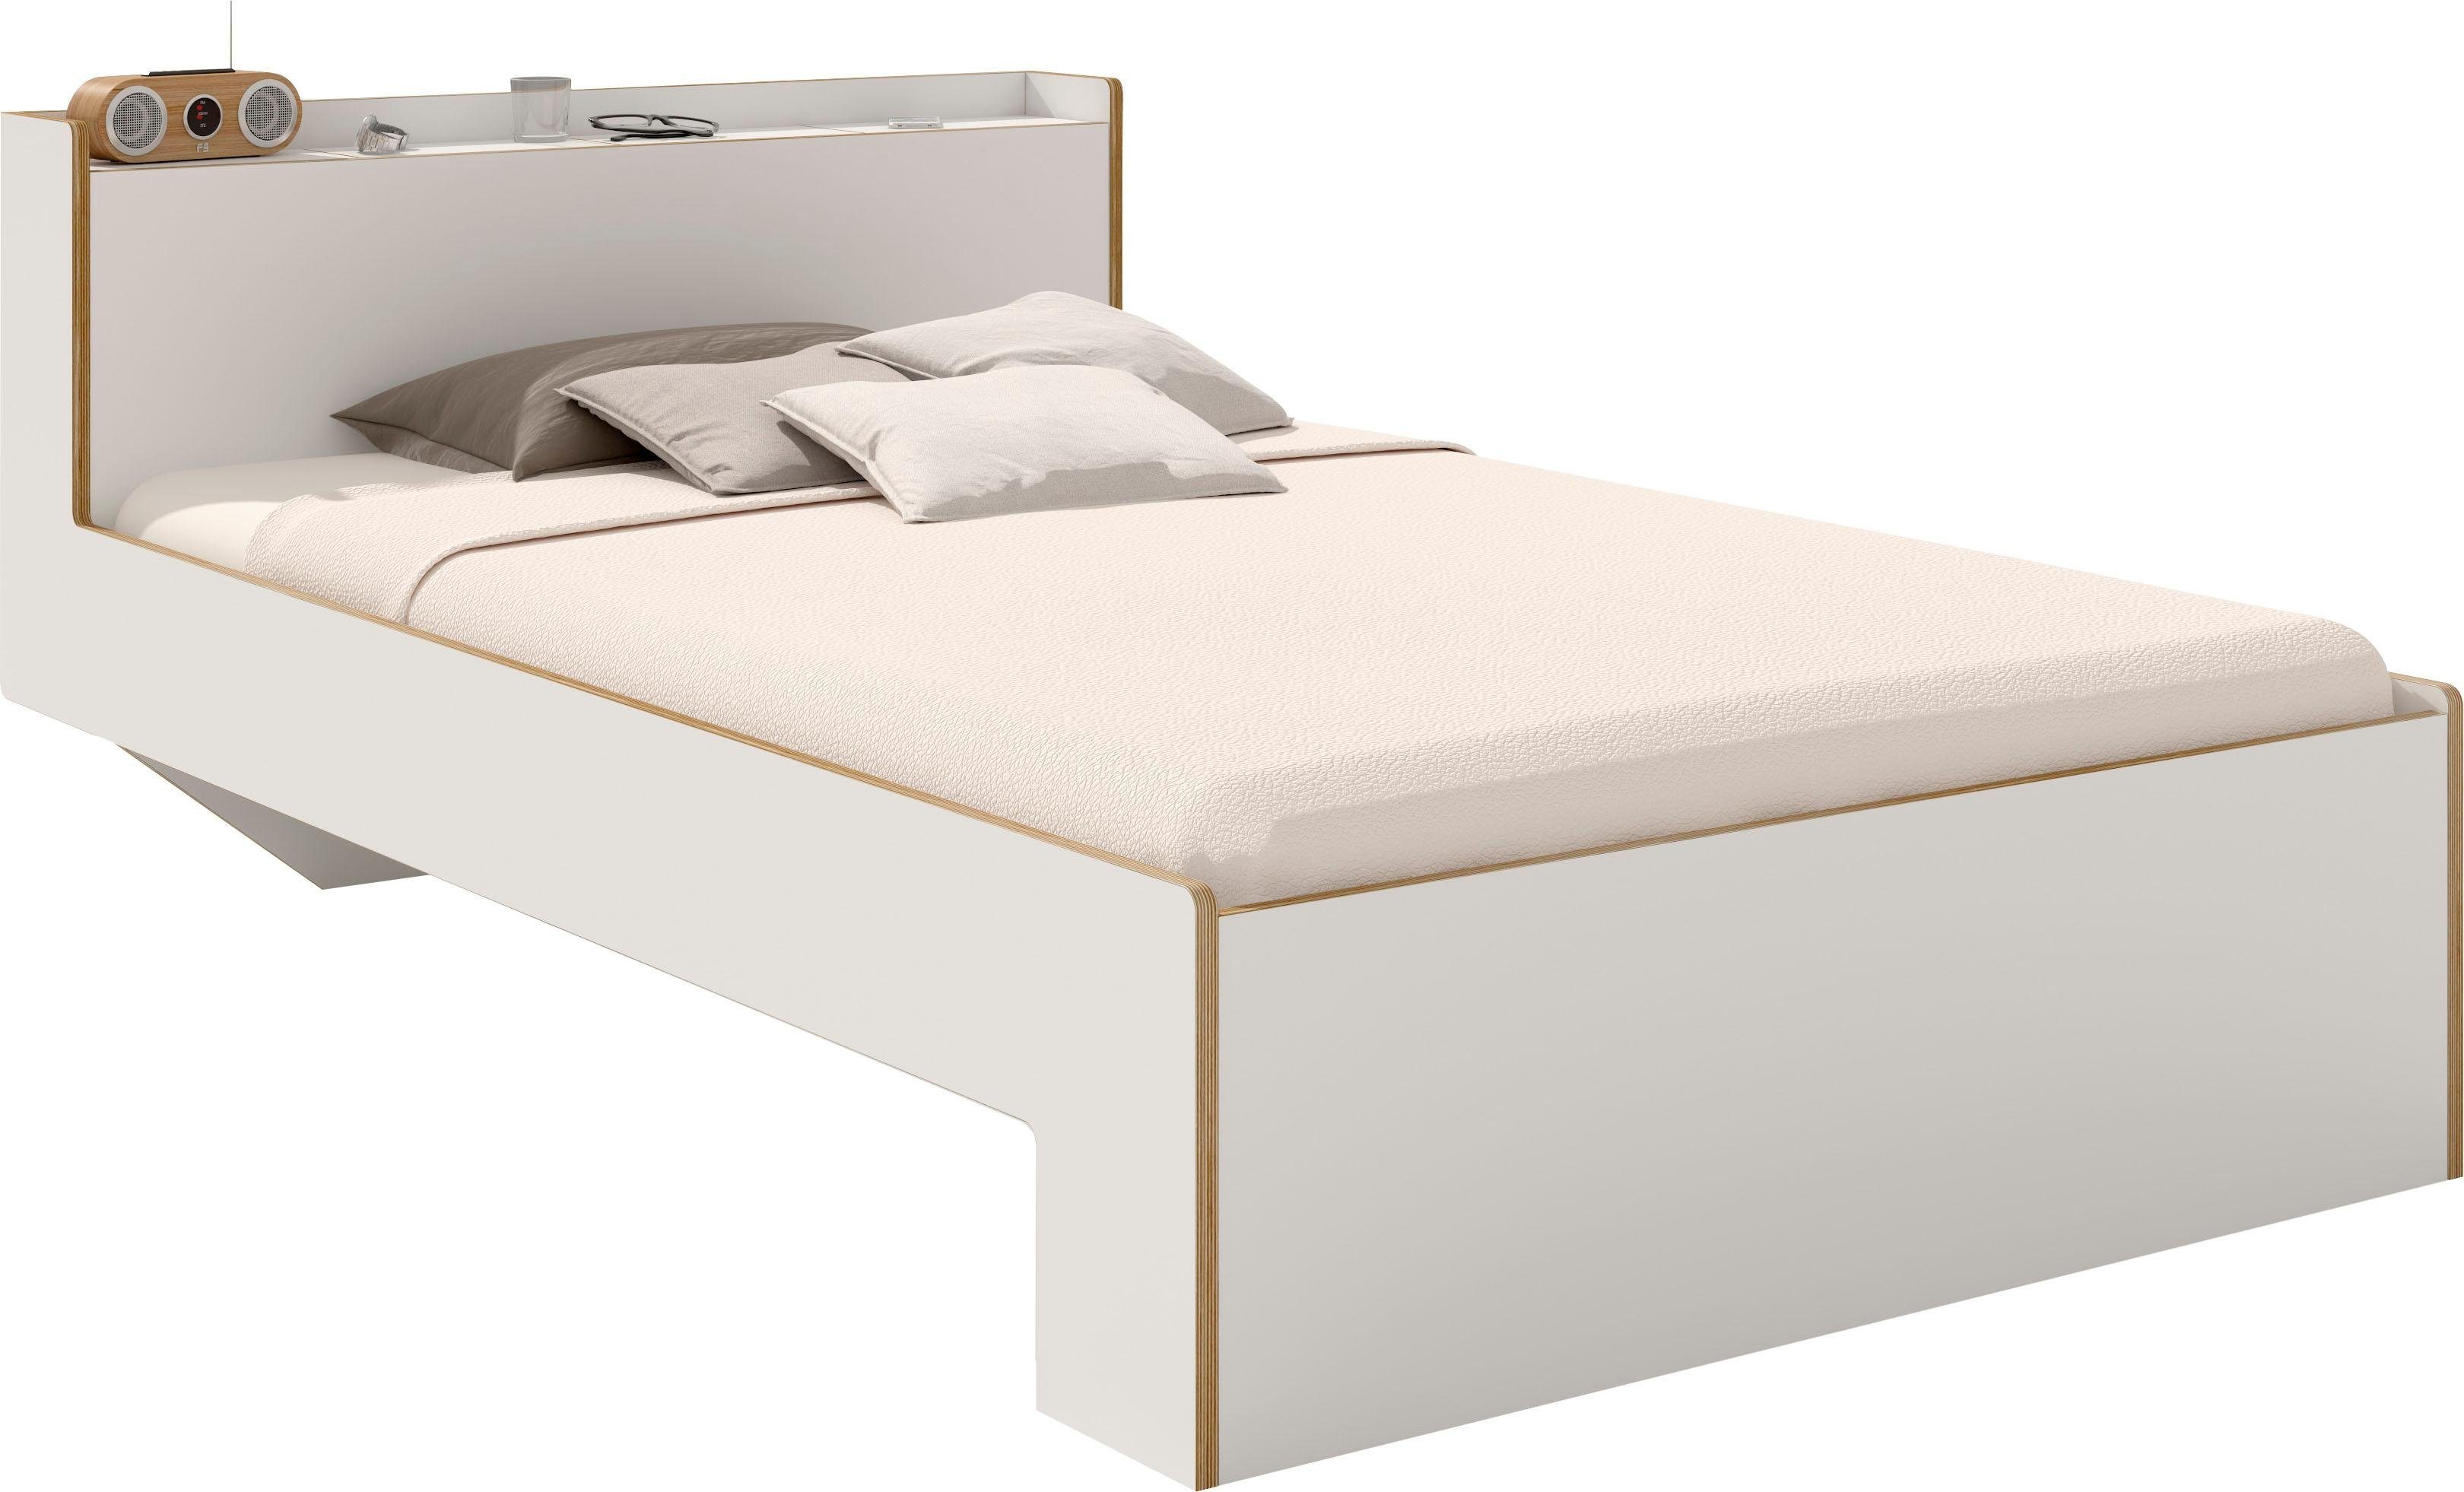 Müller SMALL LIVING Bett NOOK, in zwei Breiten, Design by Michael Hilgers